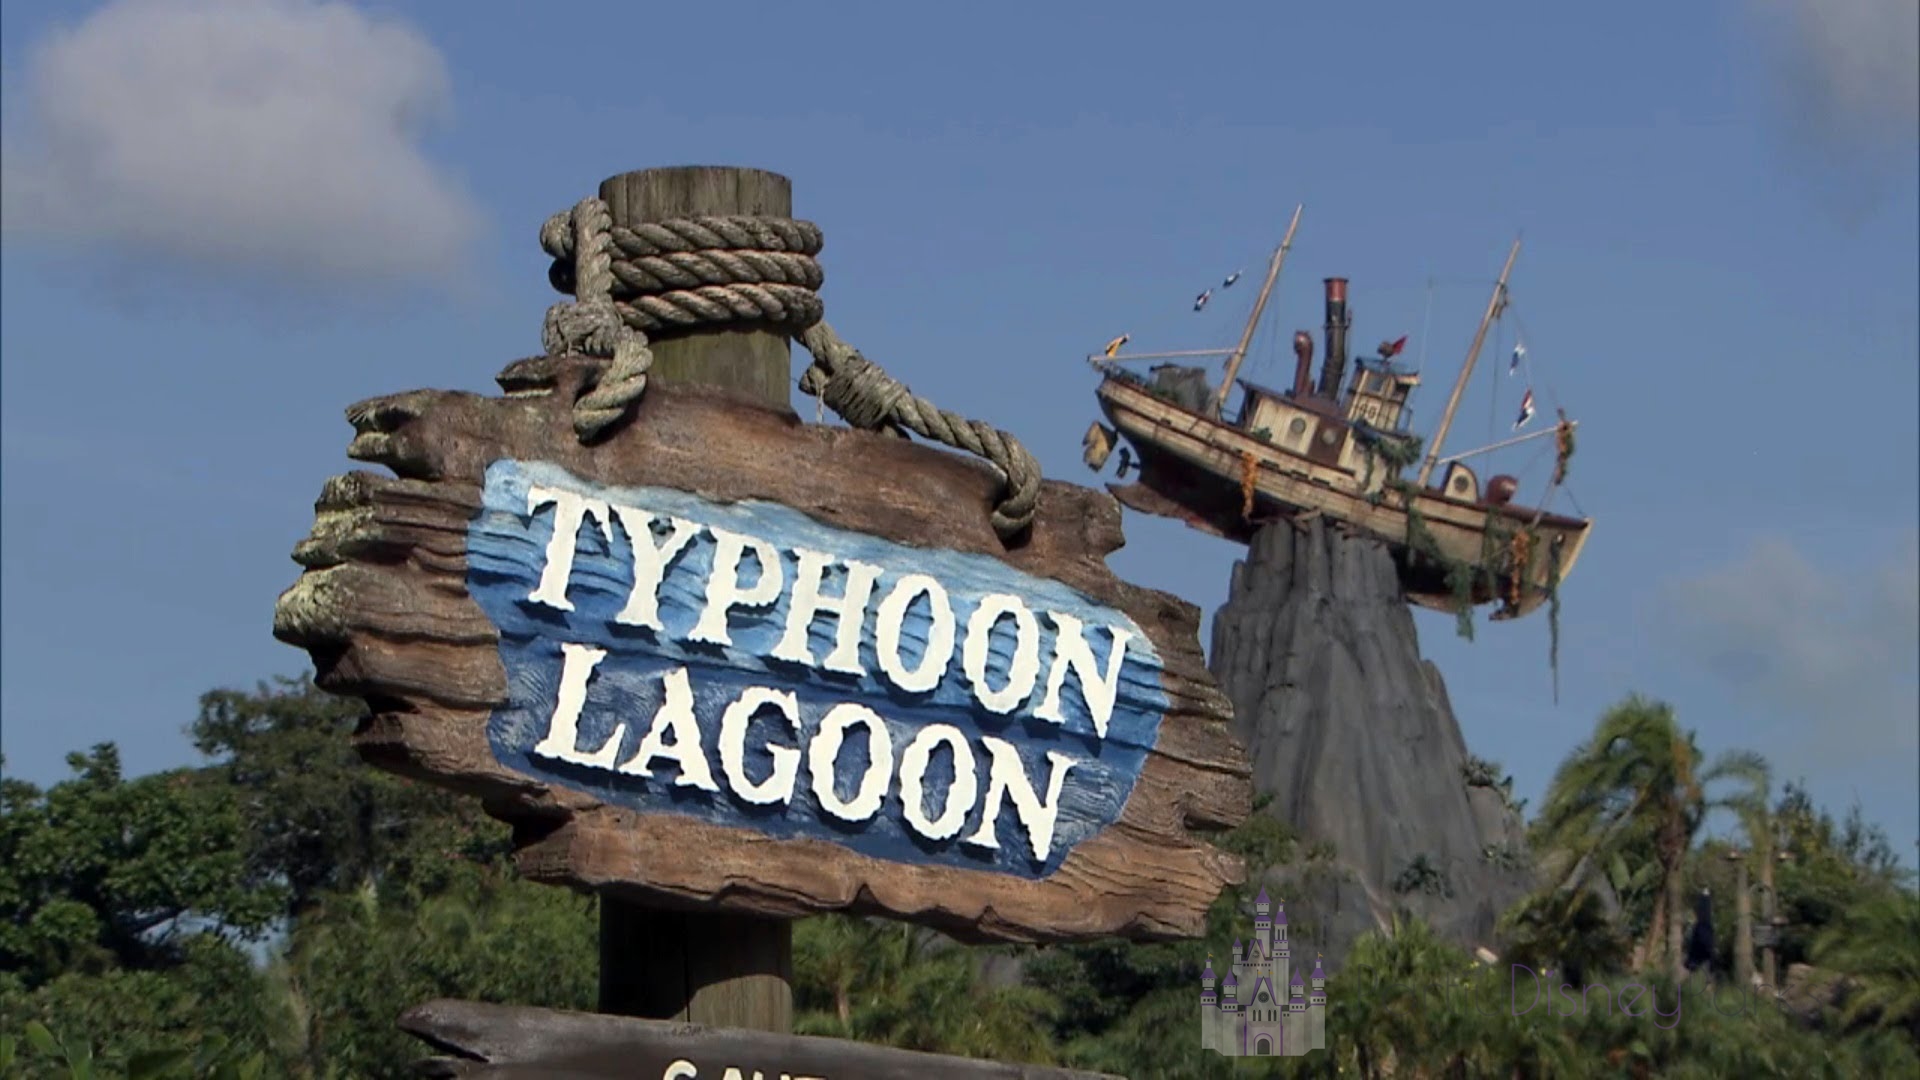 Typhoon Lagoon: Disney's oldest water park